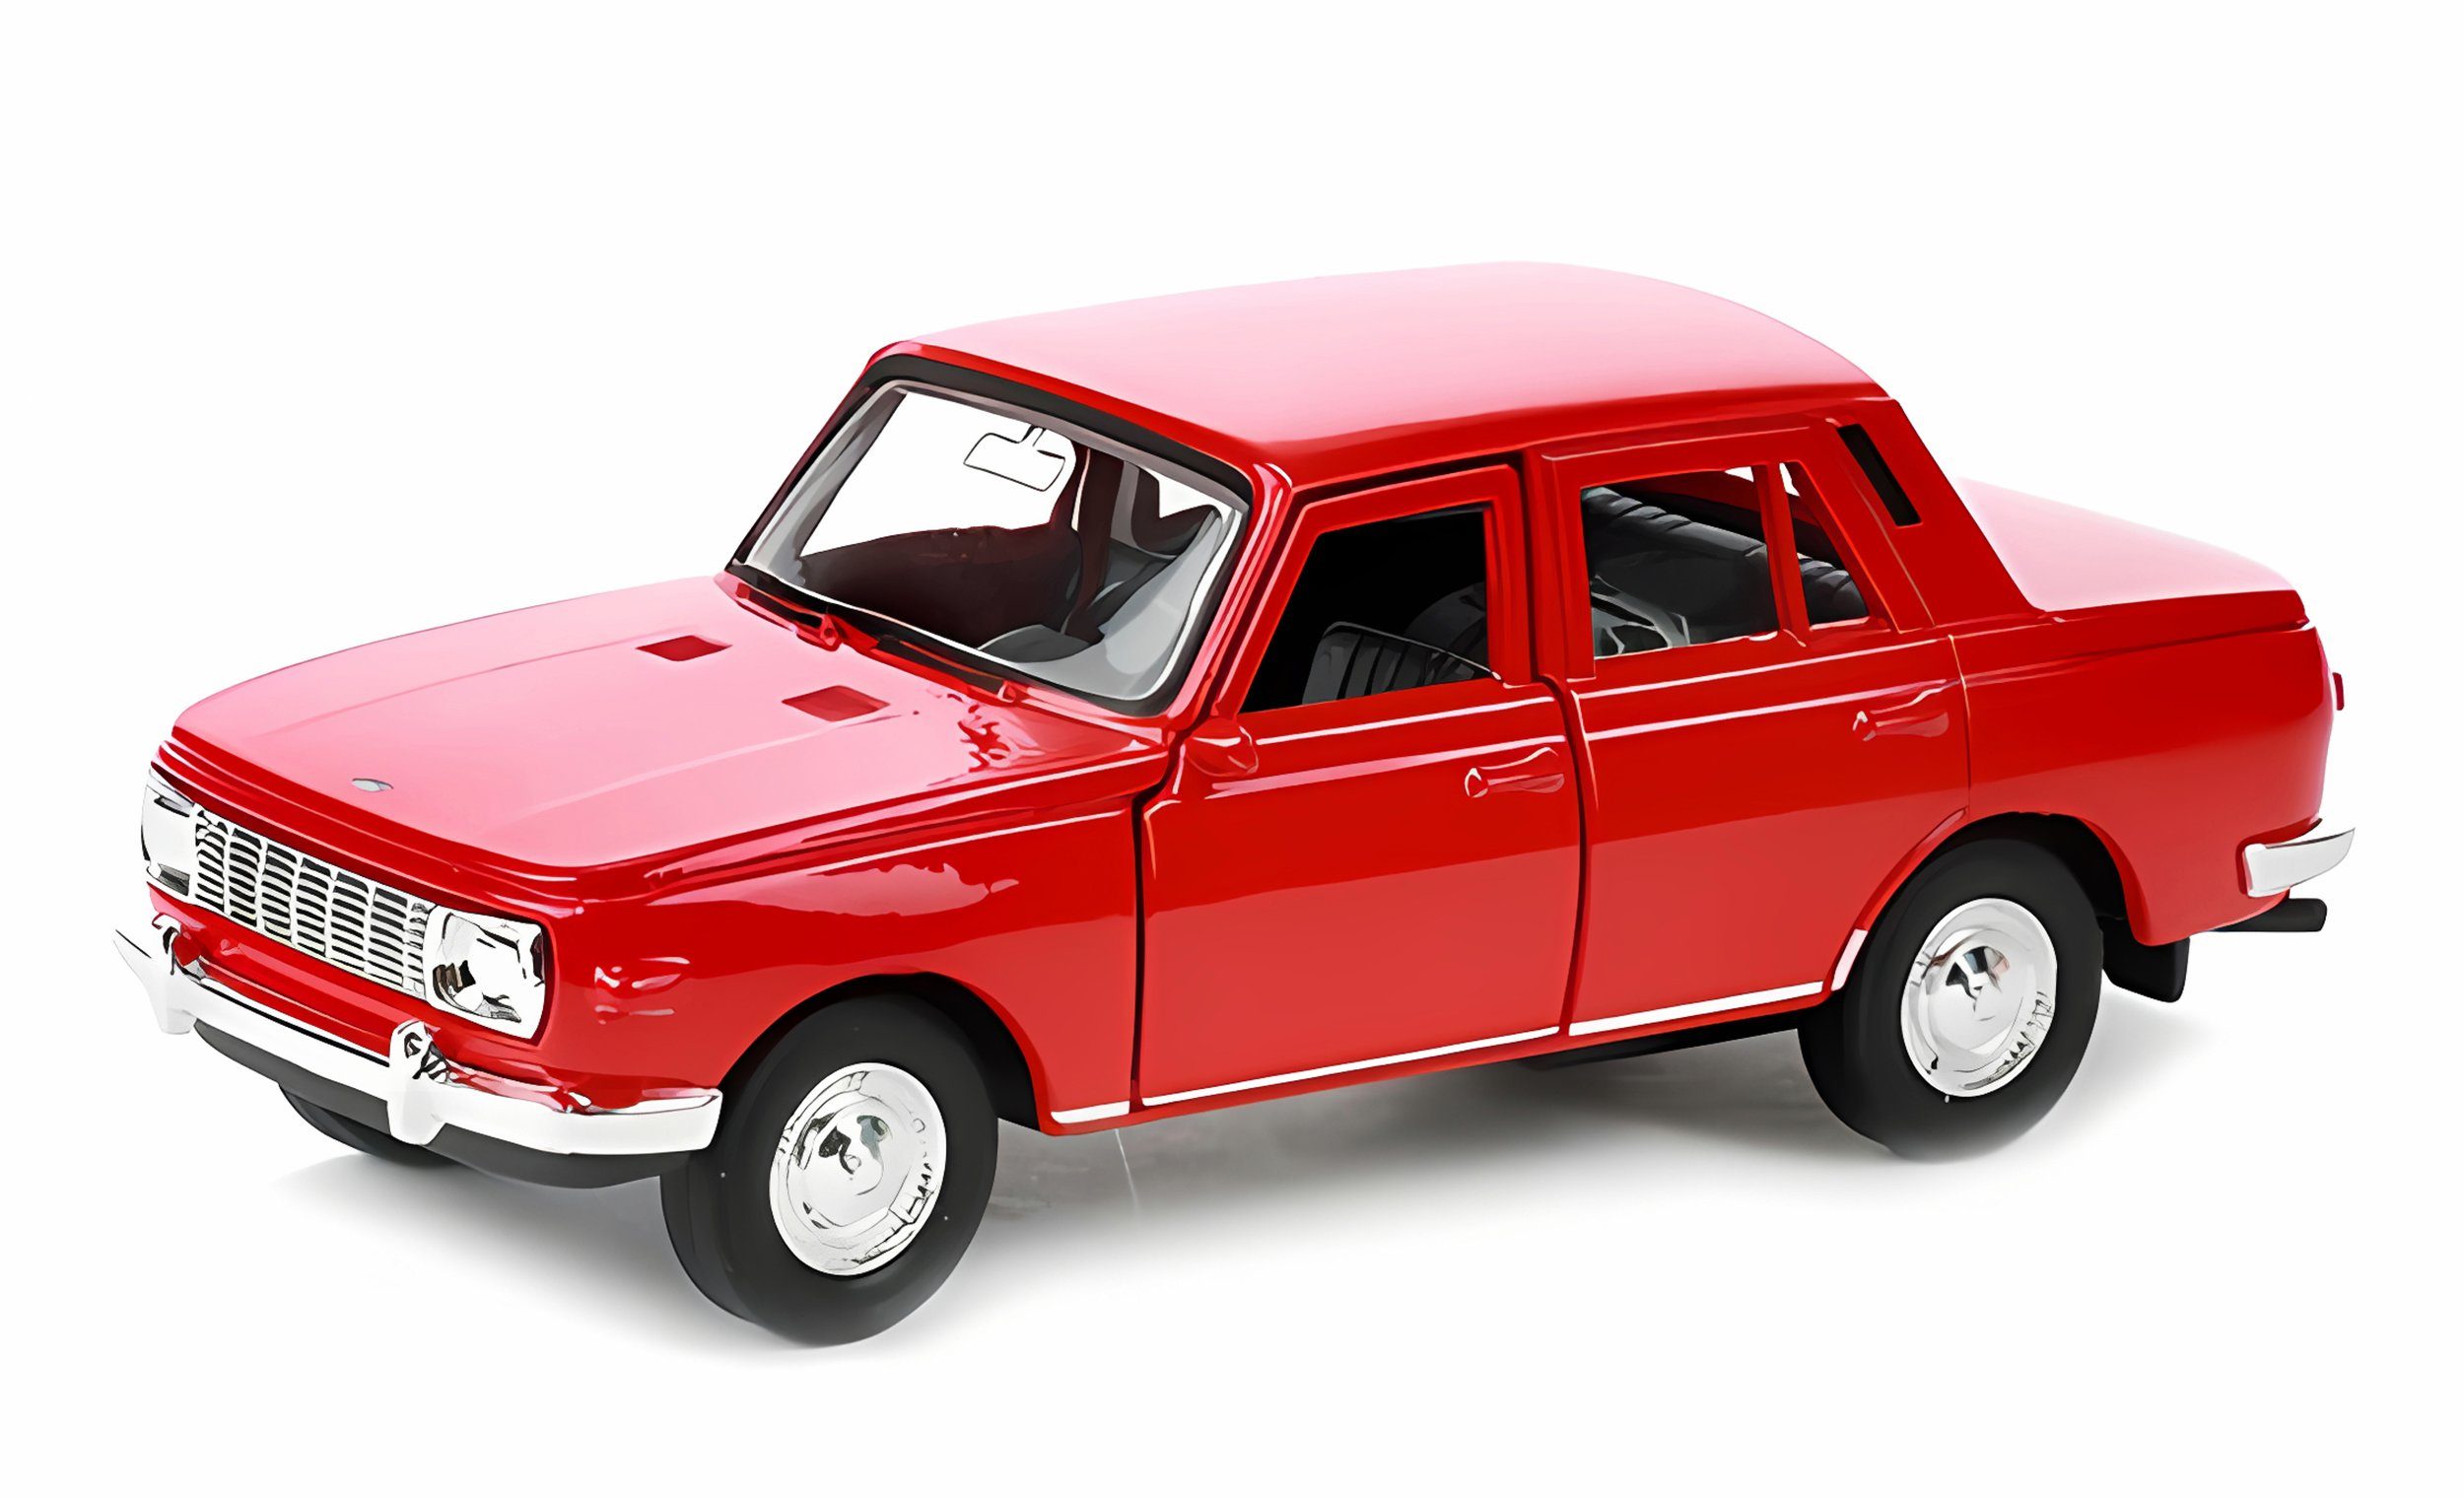 Welly Modellauto WARTBURG 353 Modellauto 11,7cm aus Metall Modell Auto 31 (Rot), Spielzeugauto WELLY Kinder Spielzeug Geschenk